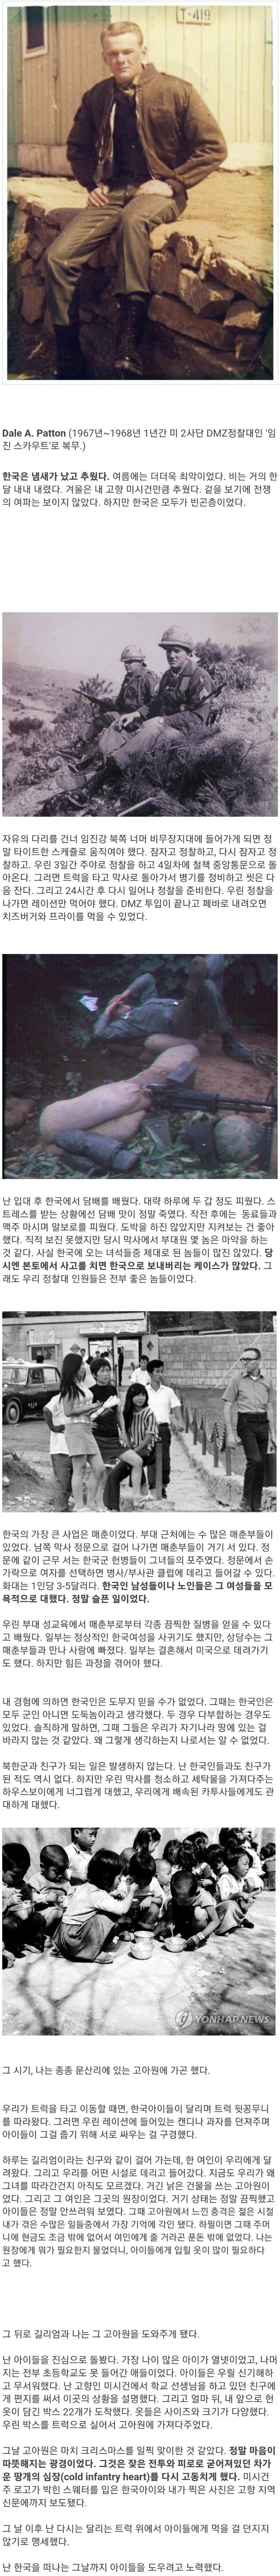 주한미군 병사가 회고하는 60년대 한국.jpg